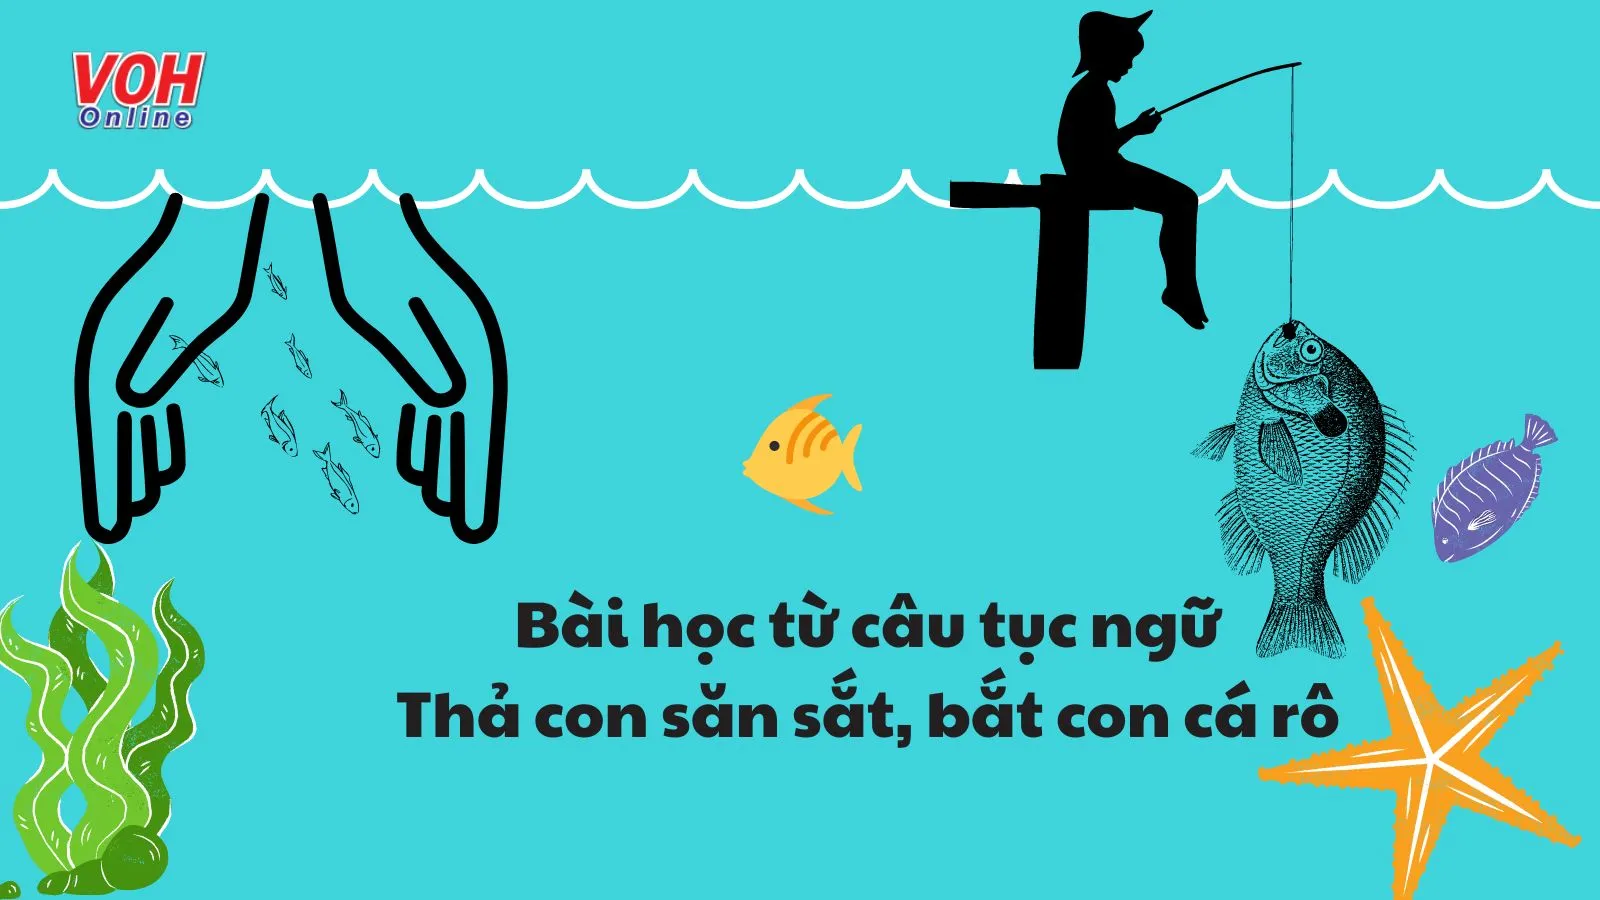 Giải thích ý nghĩa của câu tục ngữ ‘Thả con săn sắt bắt con cá rô’ nói lên điều gì?